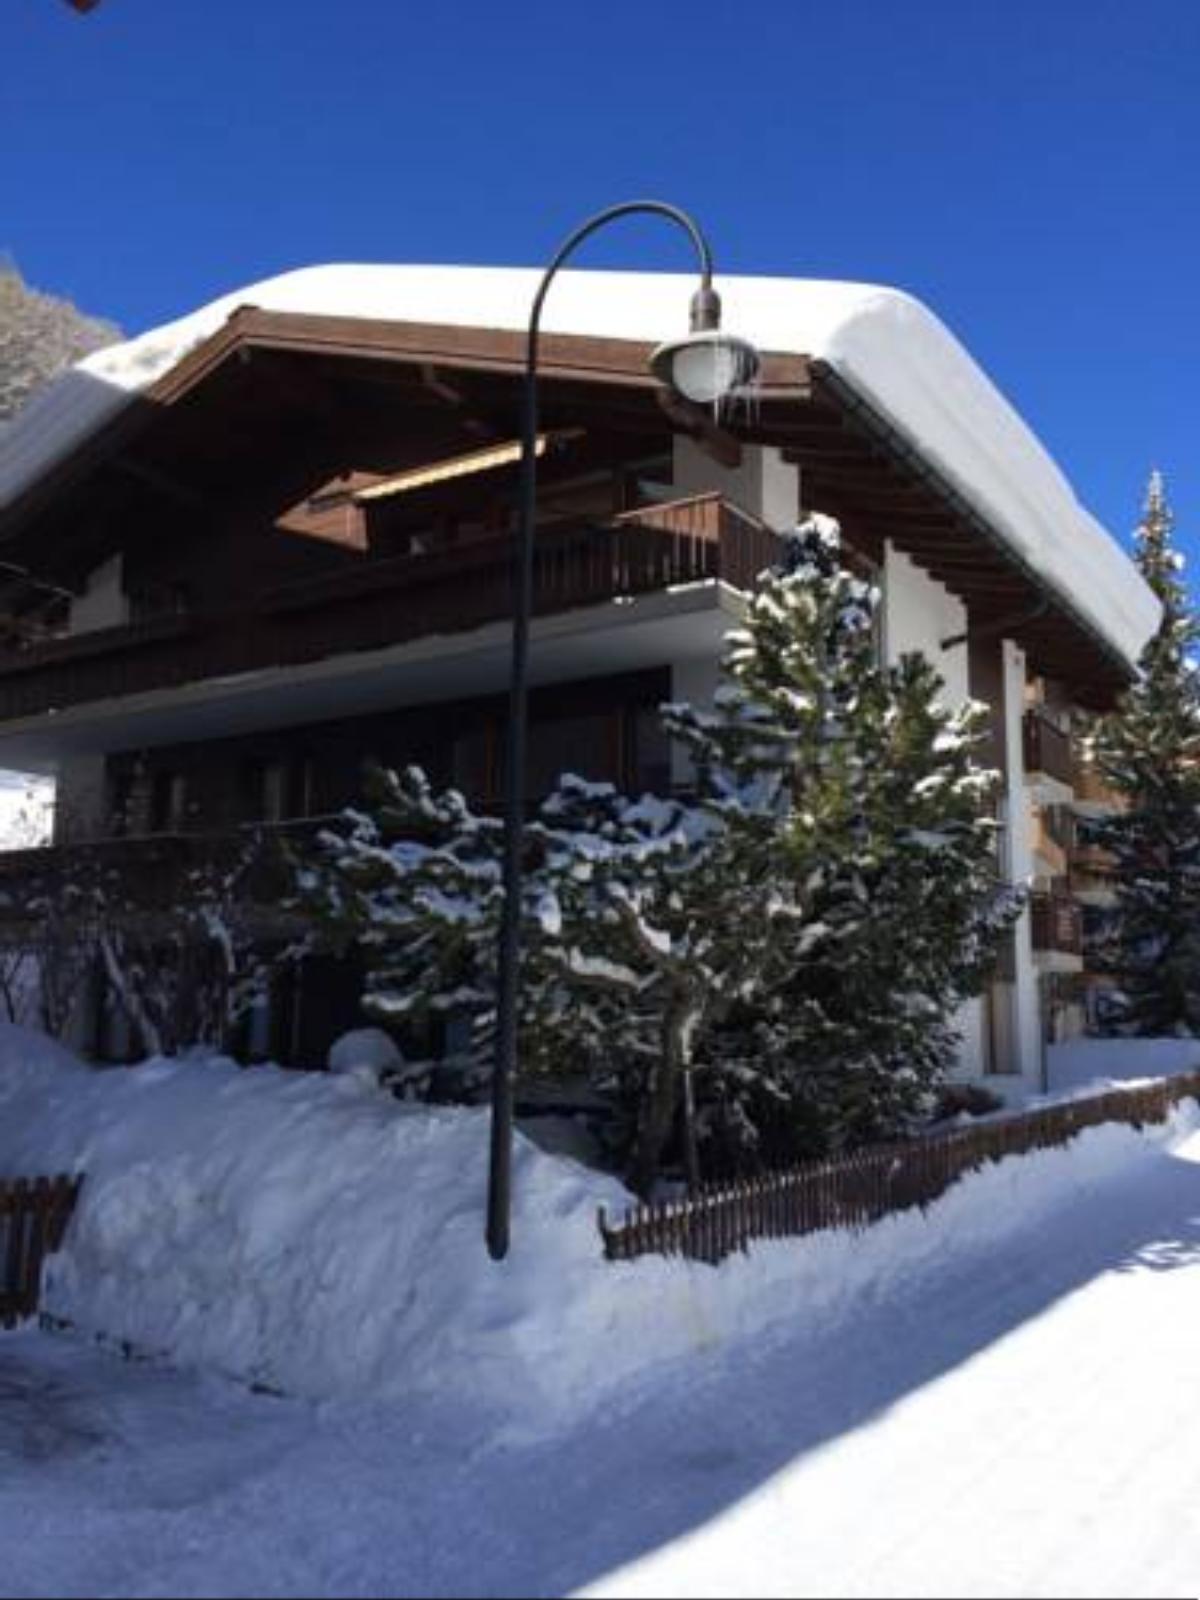 Chalet Achat Hotel Zermatt Switzerland